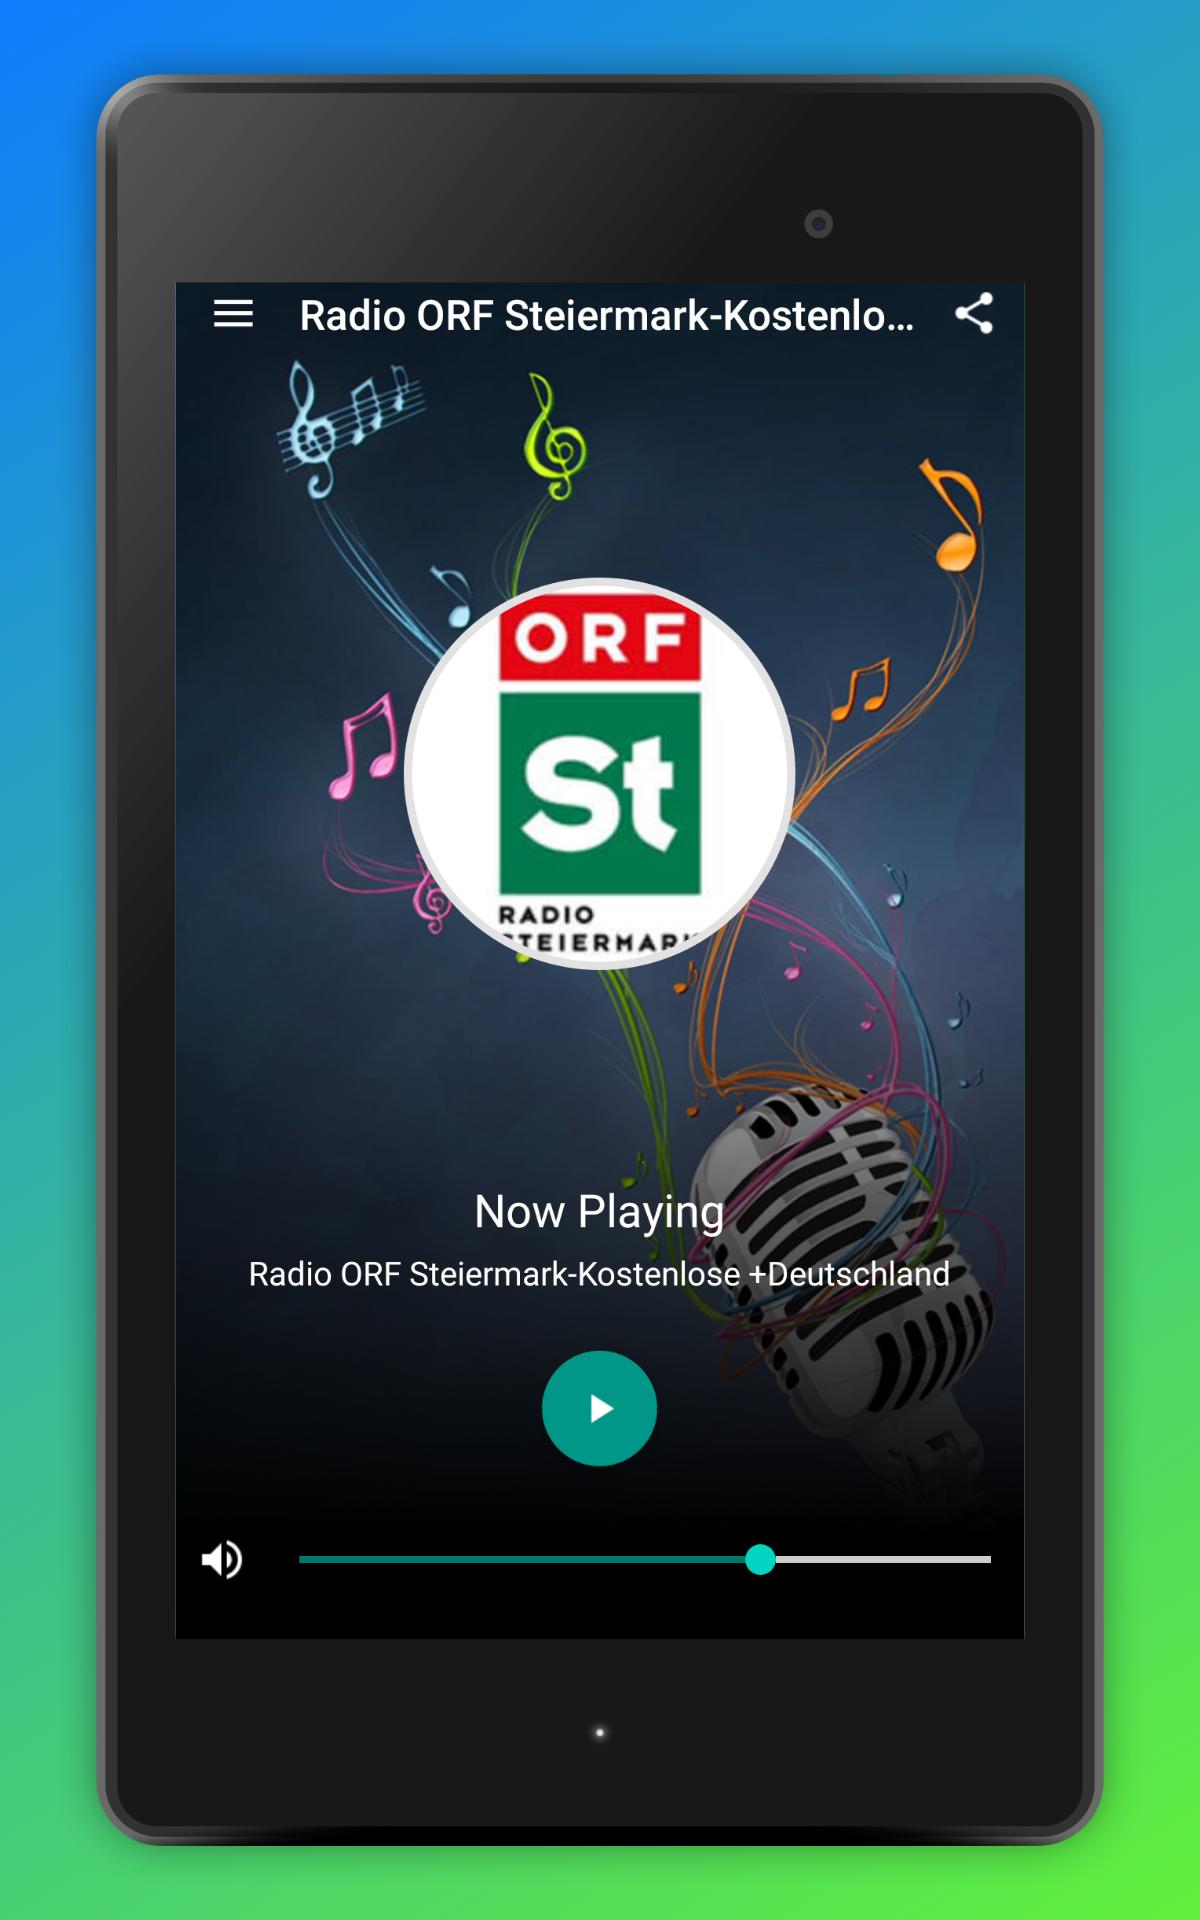 Android용 Radio ORF Steiermark-Kostenlose + Radio Österreich - APK 다운로드